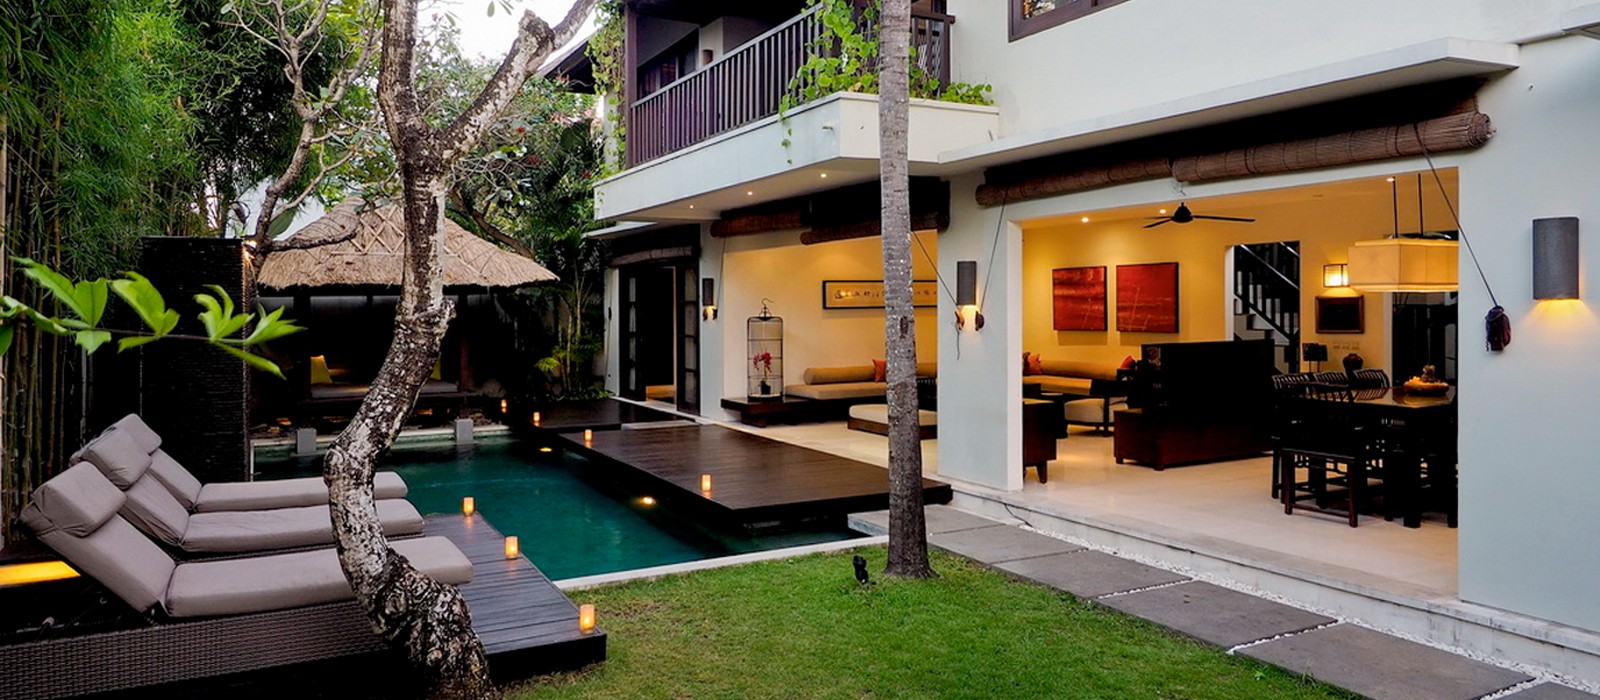 Bali honeymoon - The Amala Bali - Header